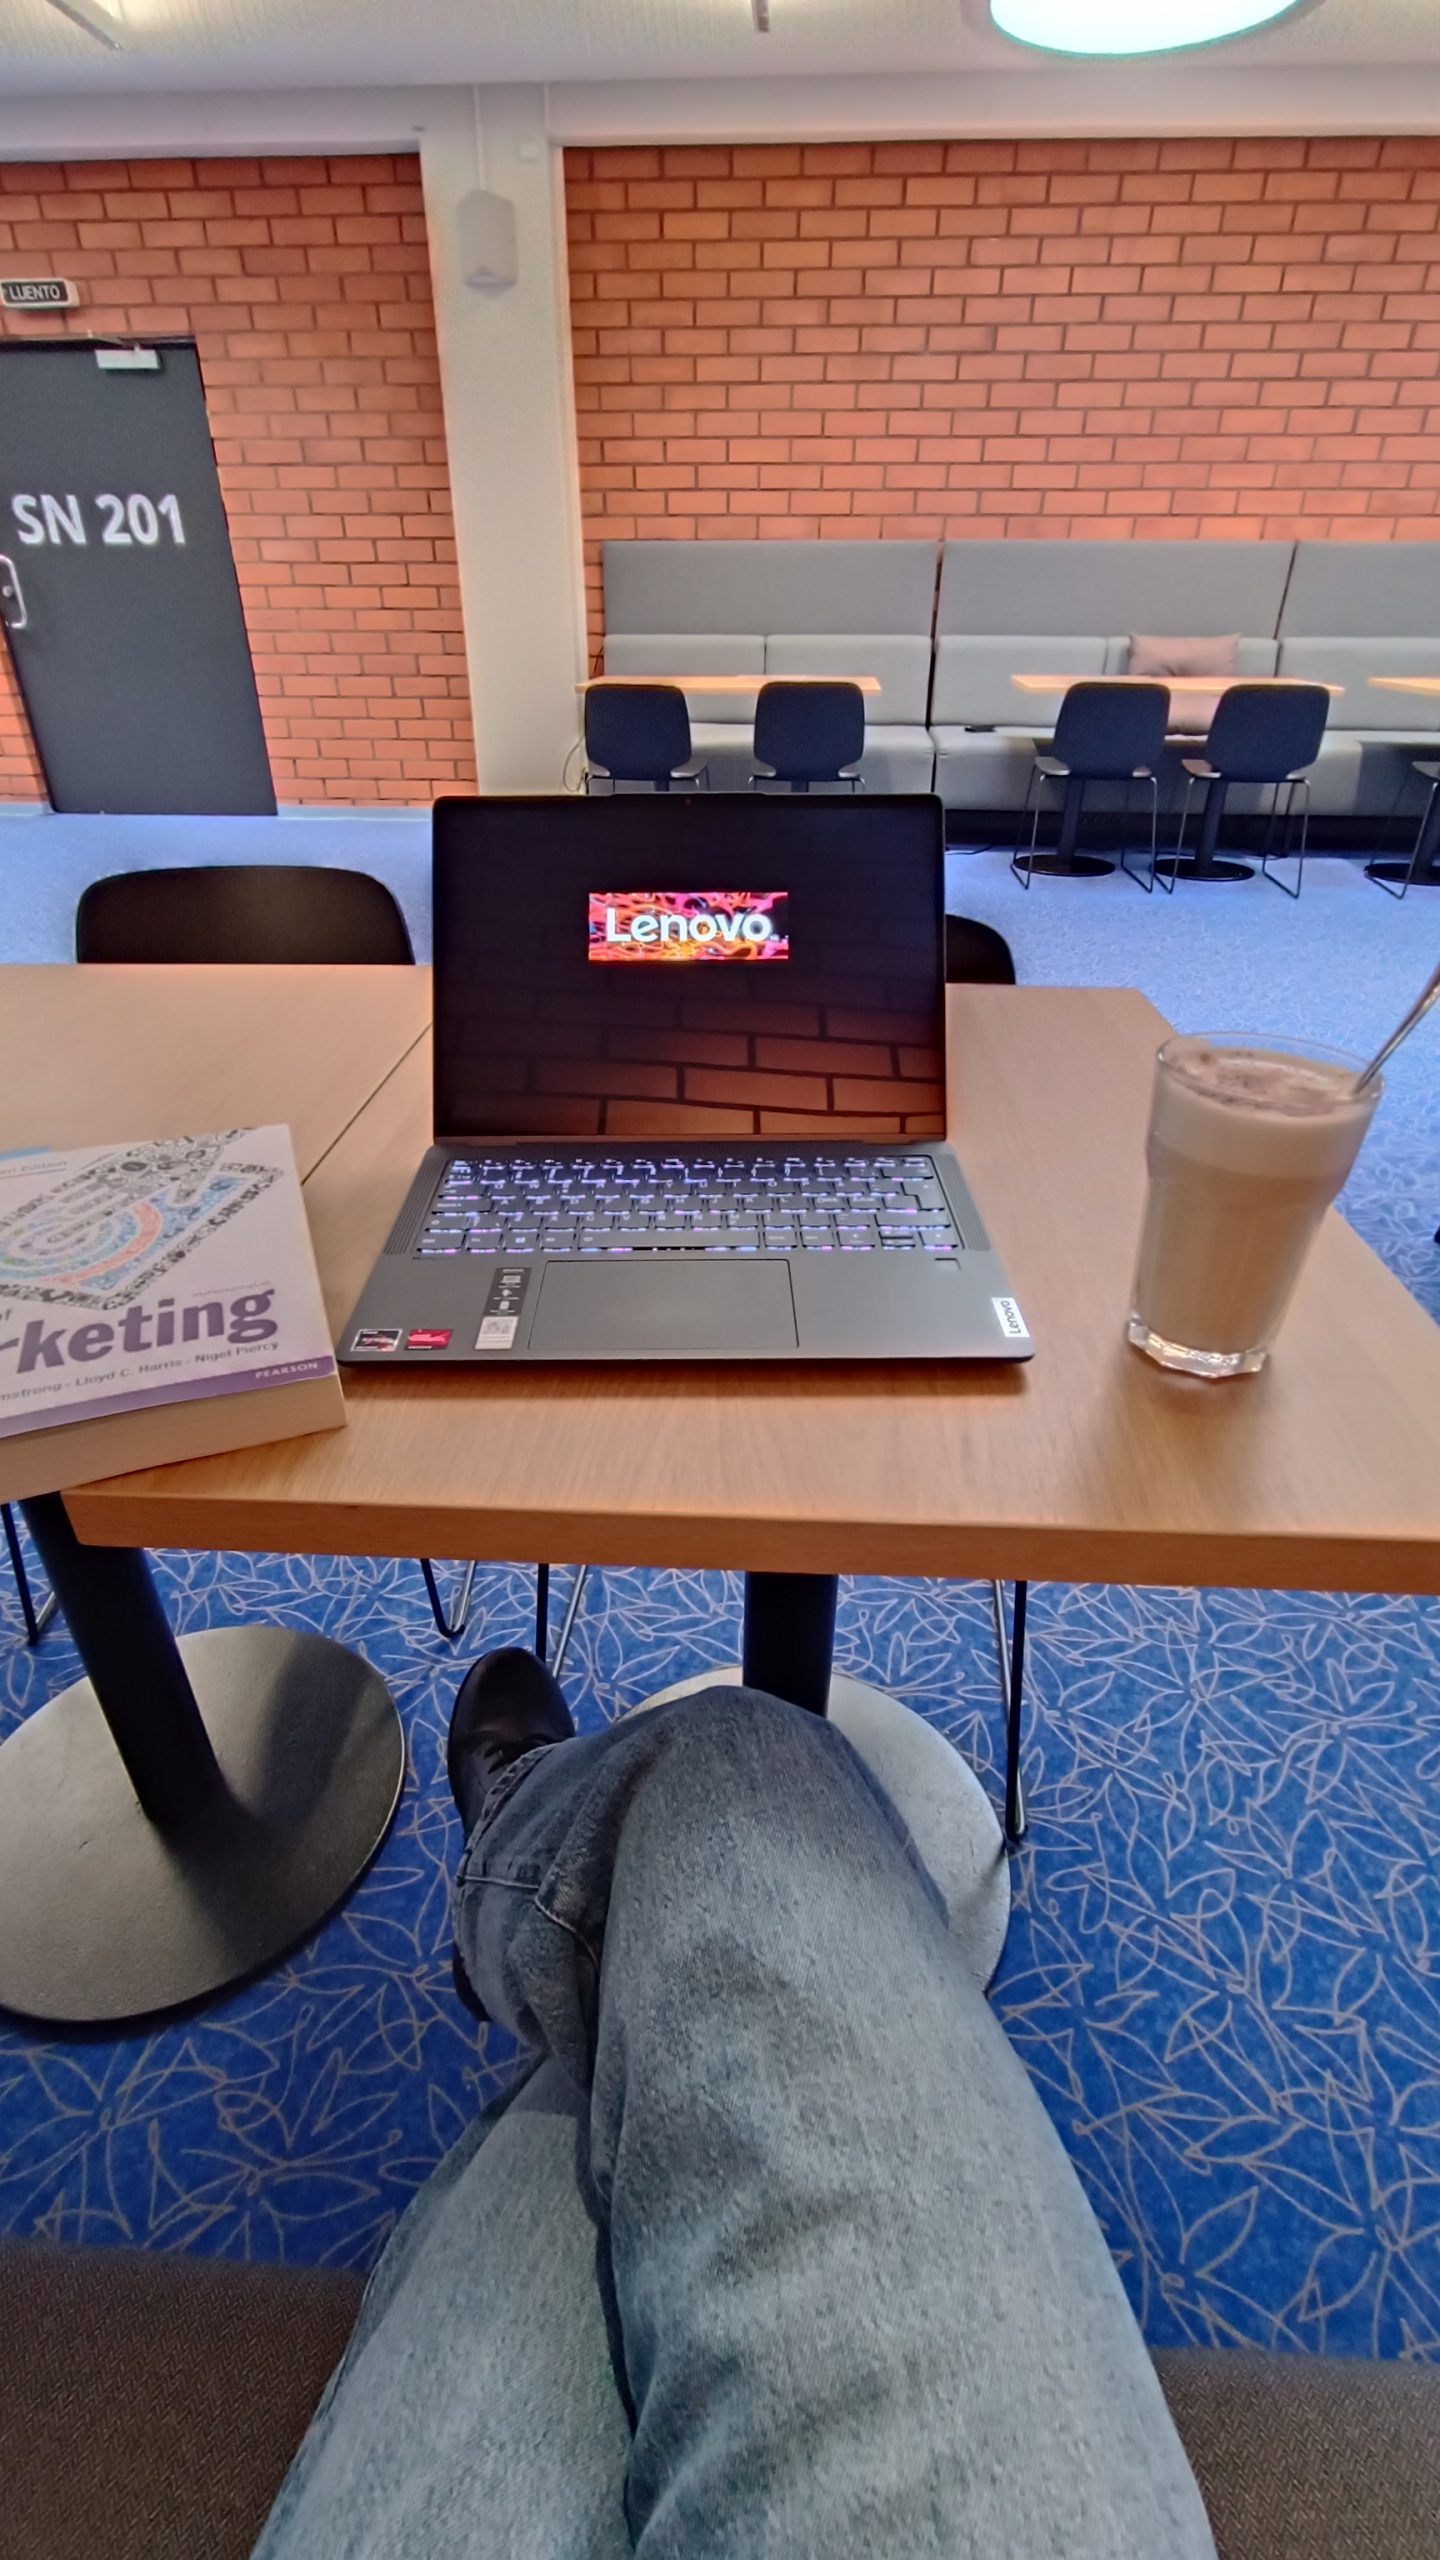 Yliopiston kahvilan pöytä, jossa tietokone, opiskelukirja ja juoma.